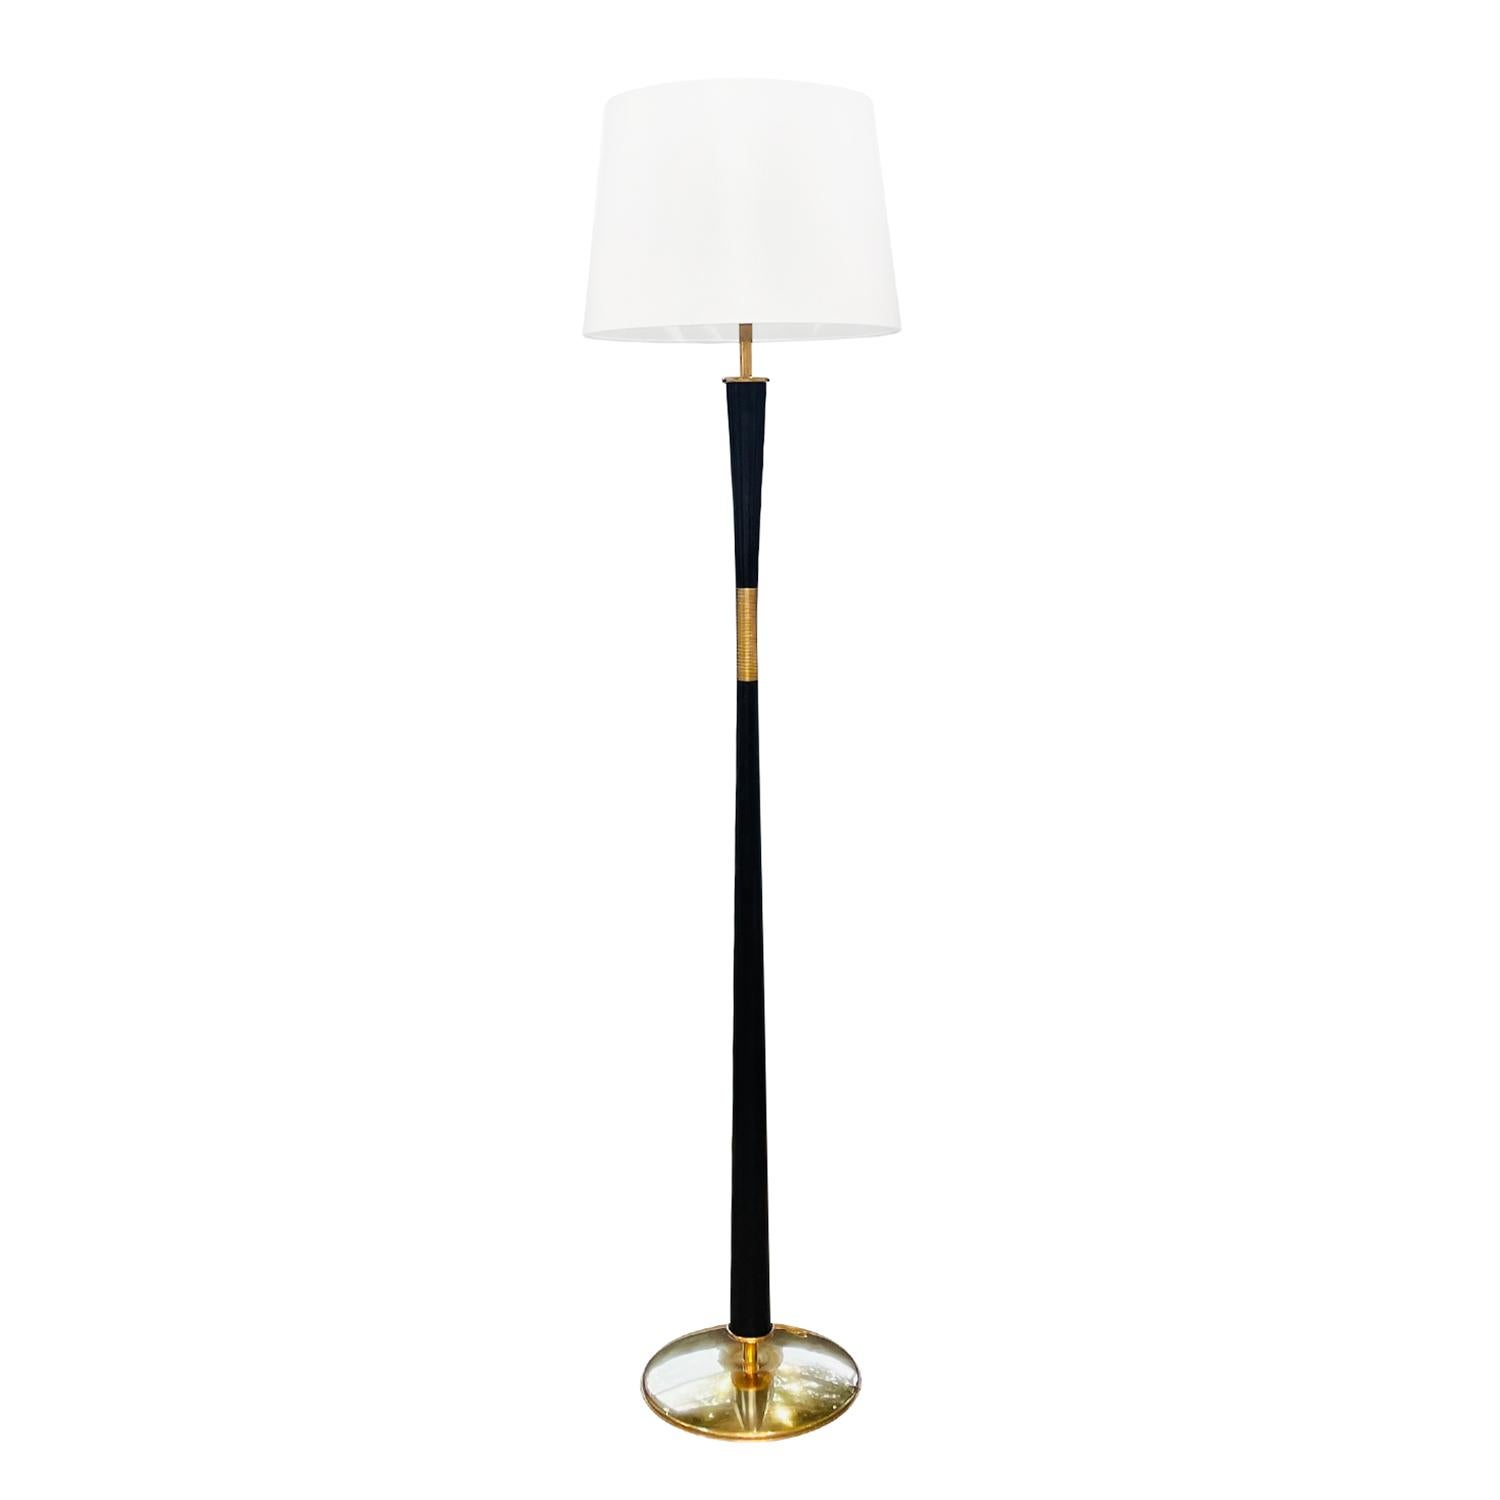 Metal 20th Century Italian Mid-Century Modern Iron Floor Lamp - Vintage Brass Light For Sale